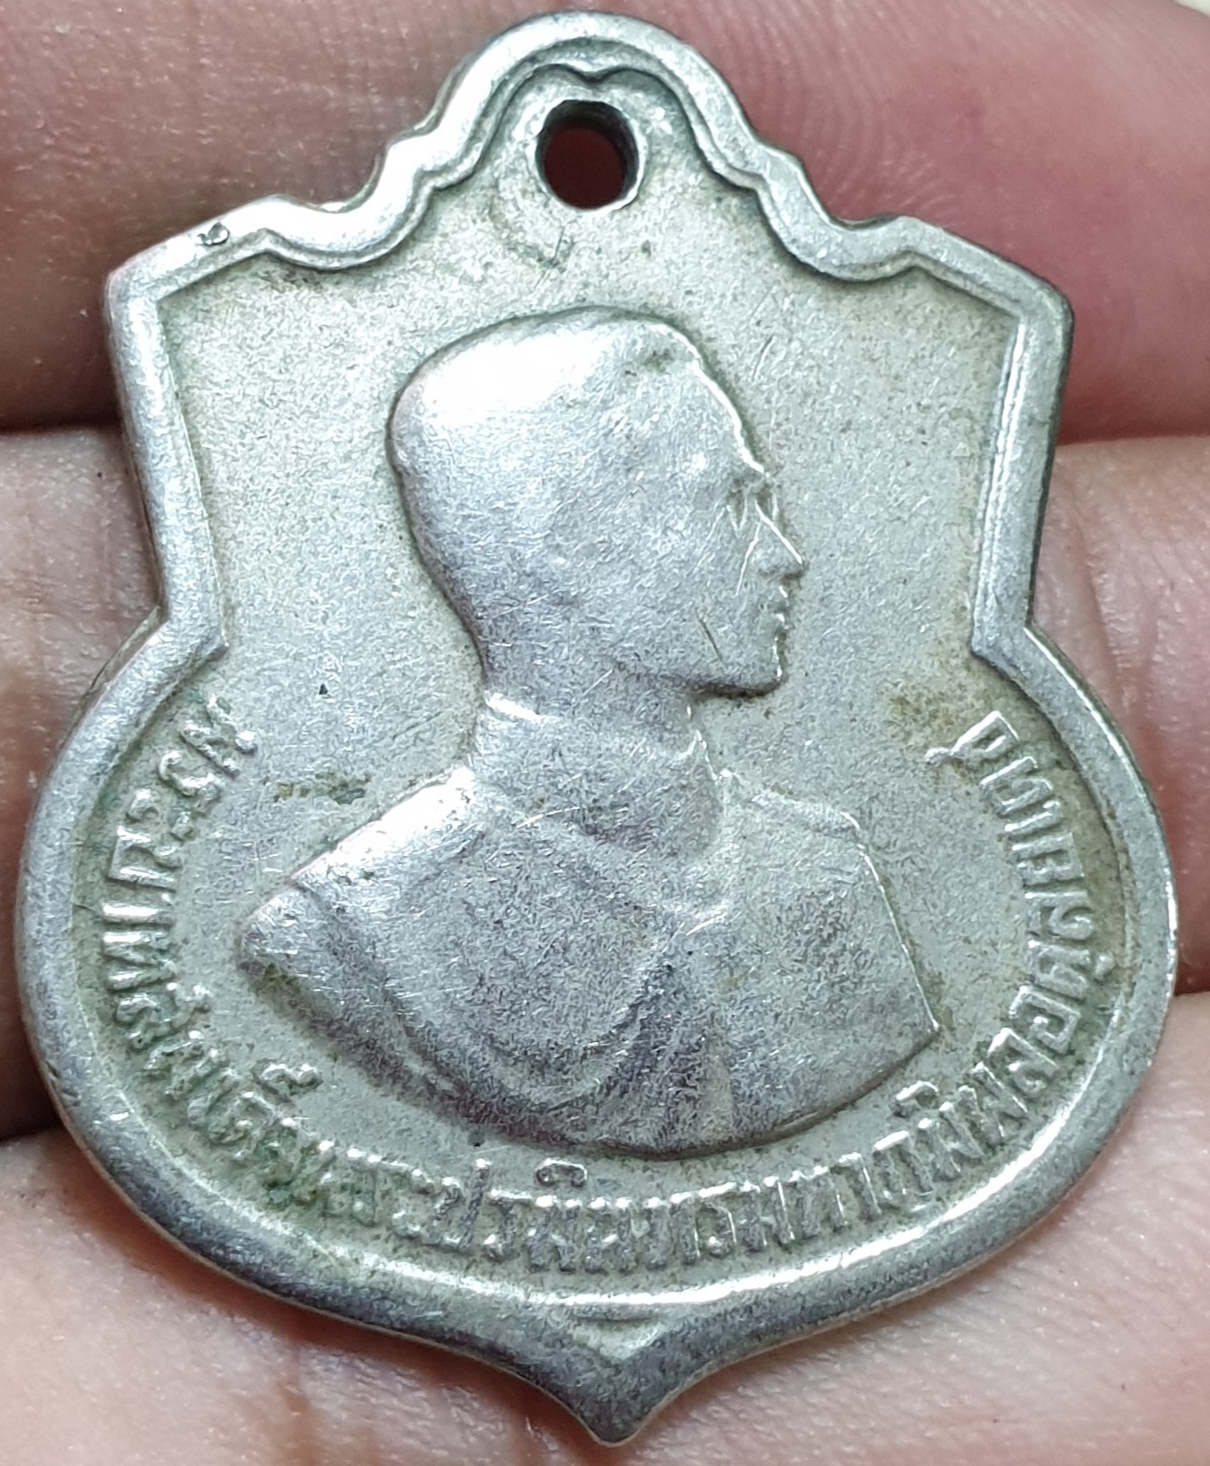 เหรียญอาร์มในหลวงรัชกาลที่ 9 ปี 2506 พระดีพิธีใหญ่  ข้าราชการตำรวจทหารห้อยติดตัวทั่วประเทศเลยจ้าสำหรับเหรียญรุ่นนี้ - พระแท้  ลาซาด้าVvip - Thaipick